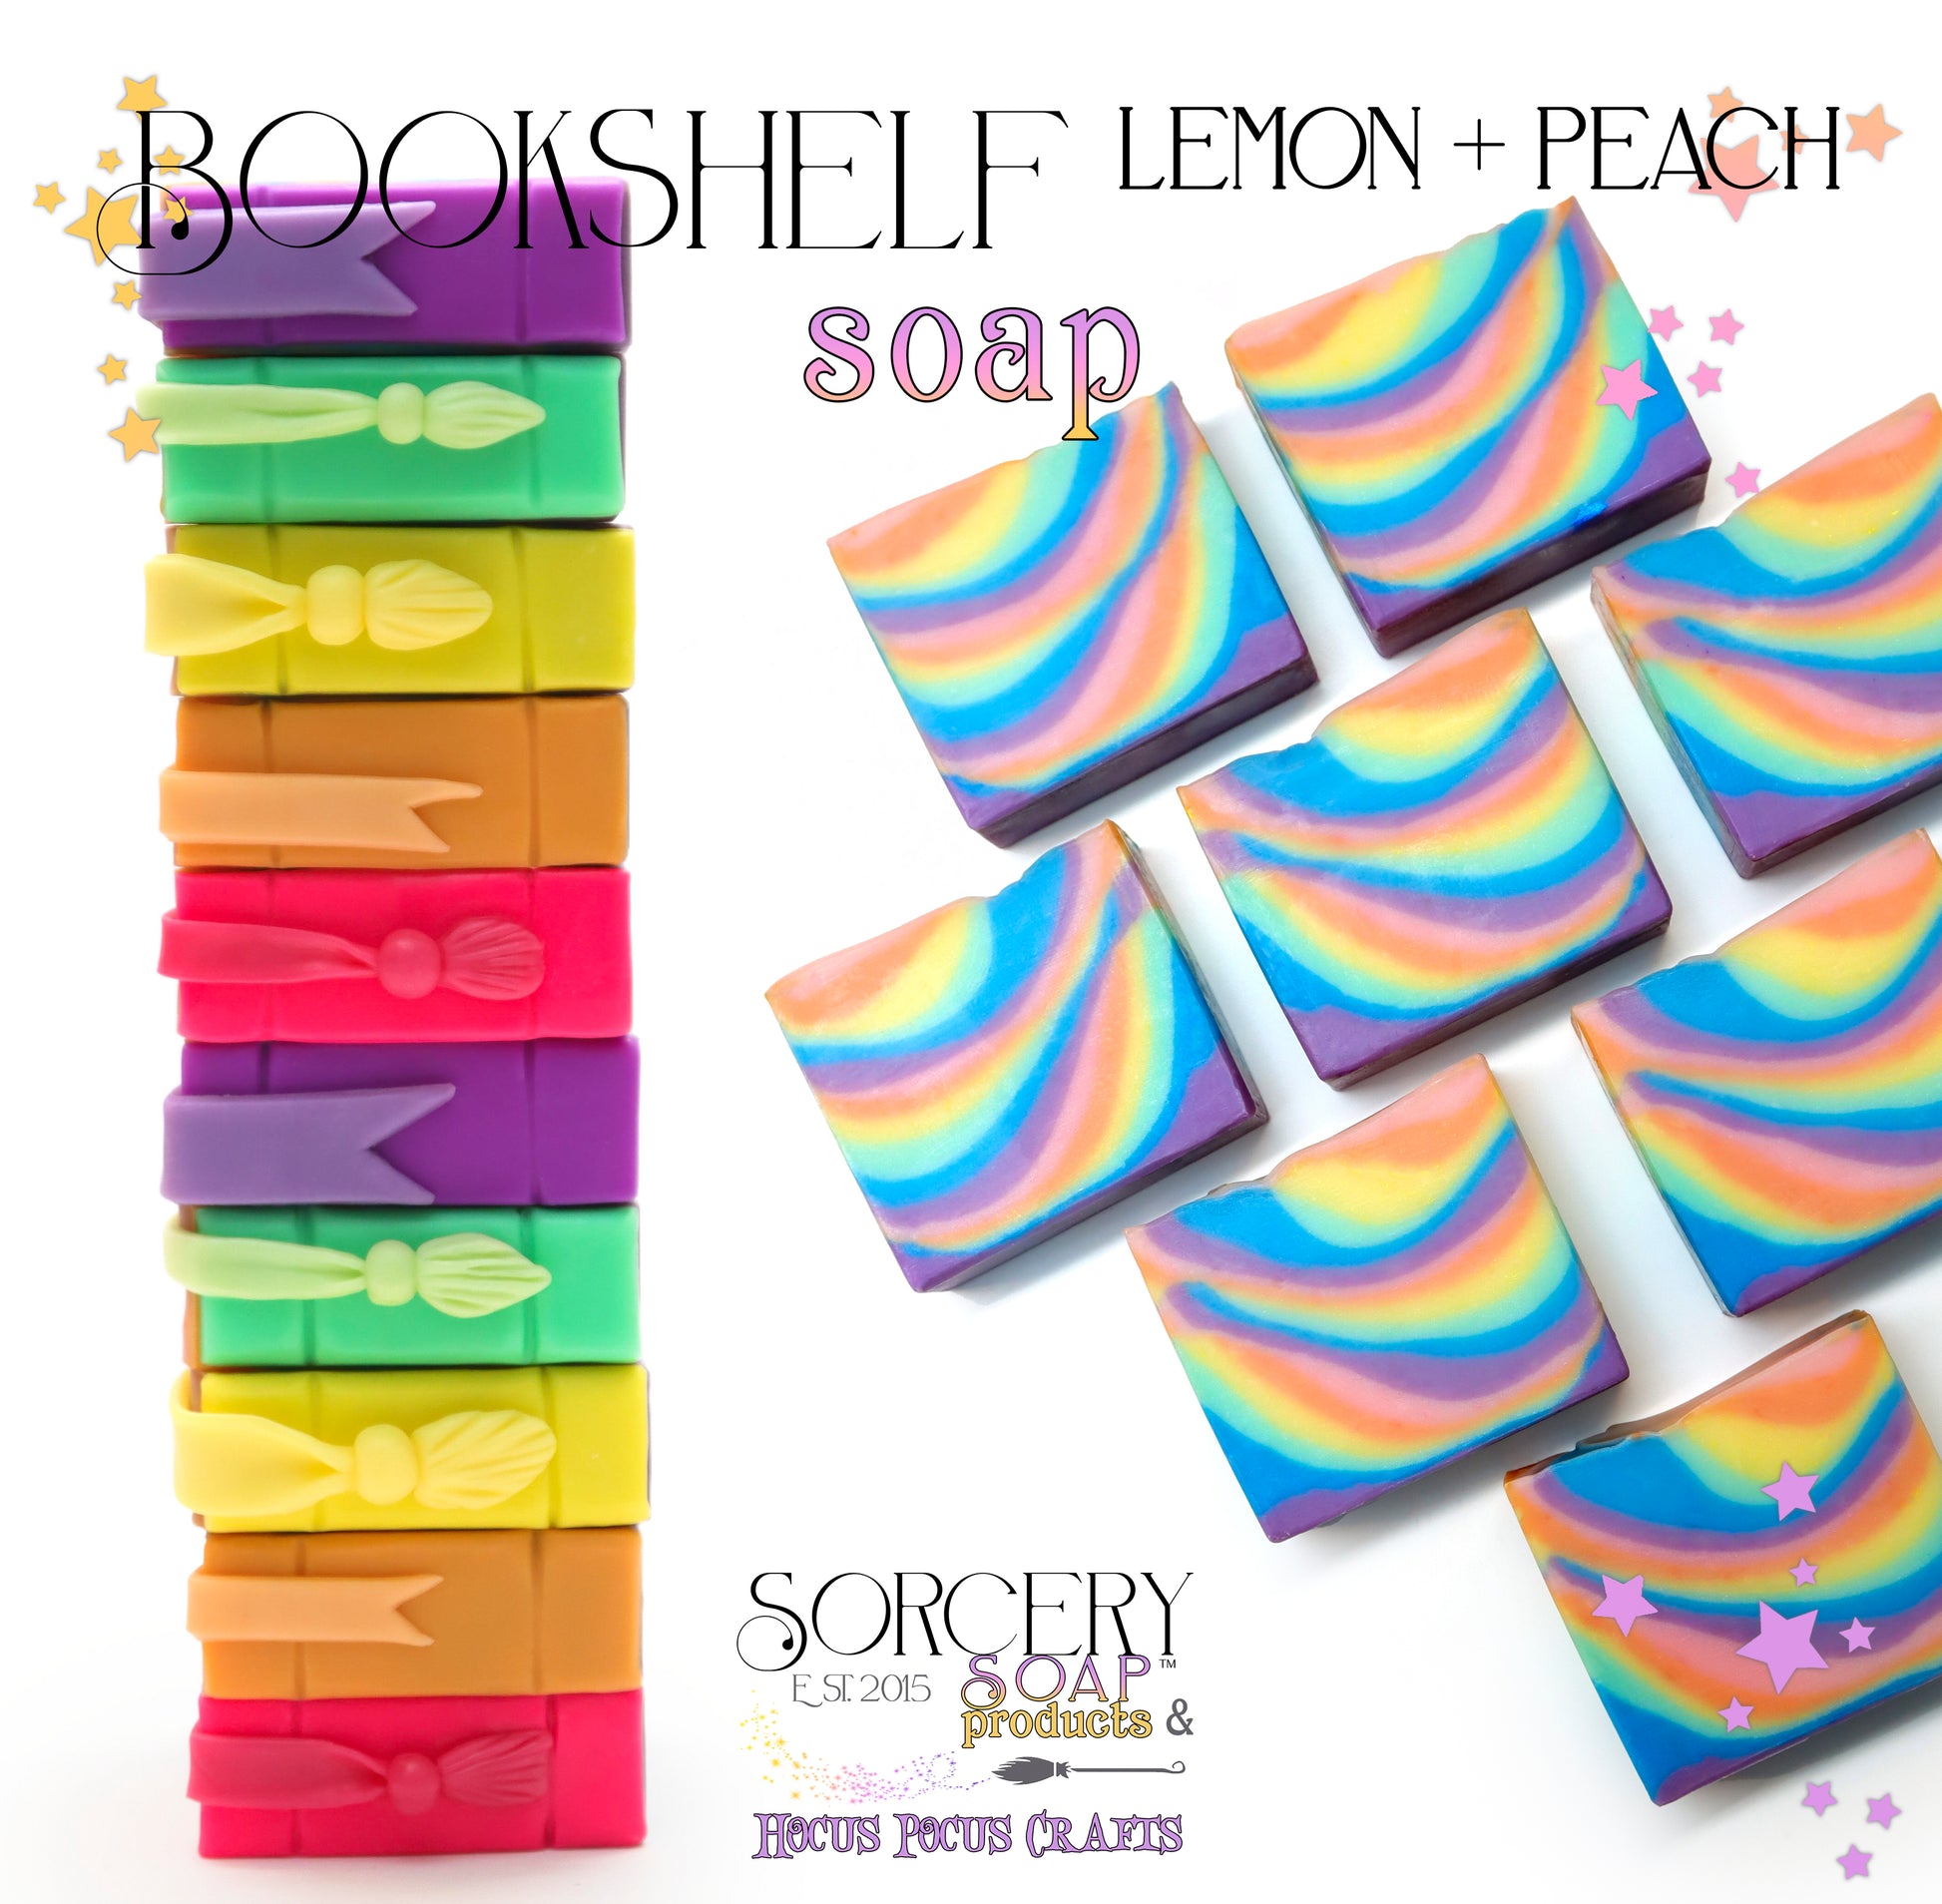 Bookshelf Lemon + Peach soap